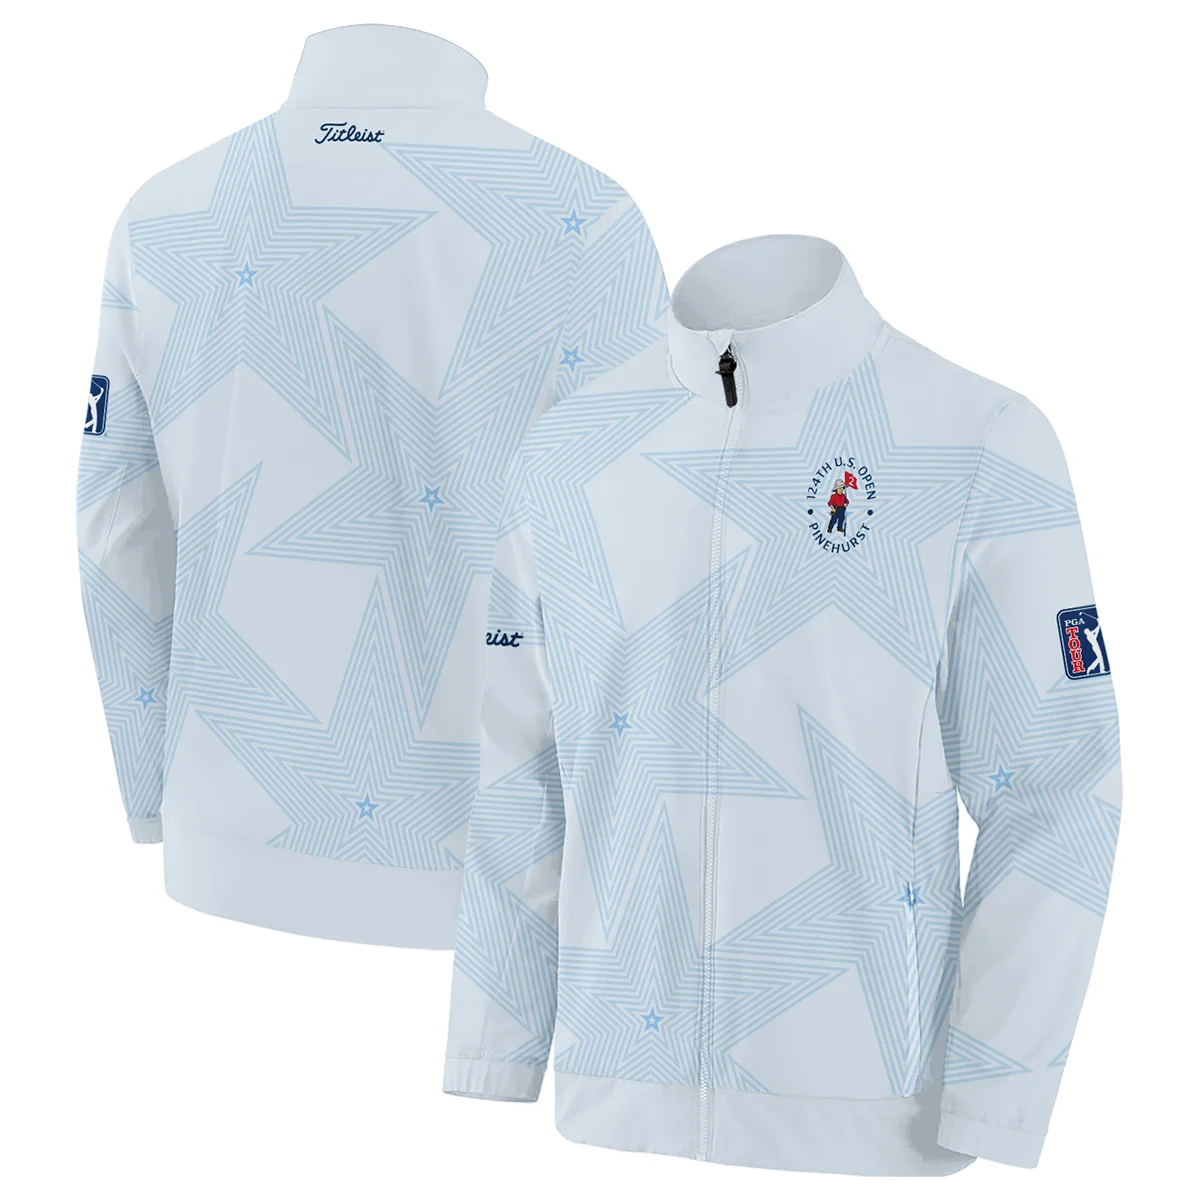 124th U.S. Open Pinehurst Golf Titleist Zipper Hoodie Shirt Sports Star Sripe Light Blue Zipper Hoodie Shirt